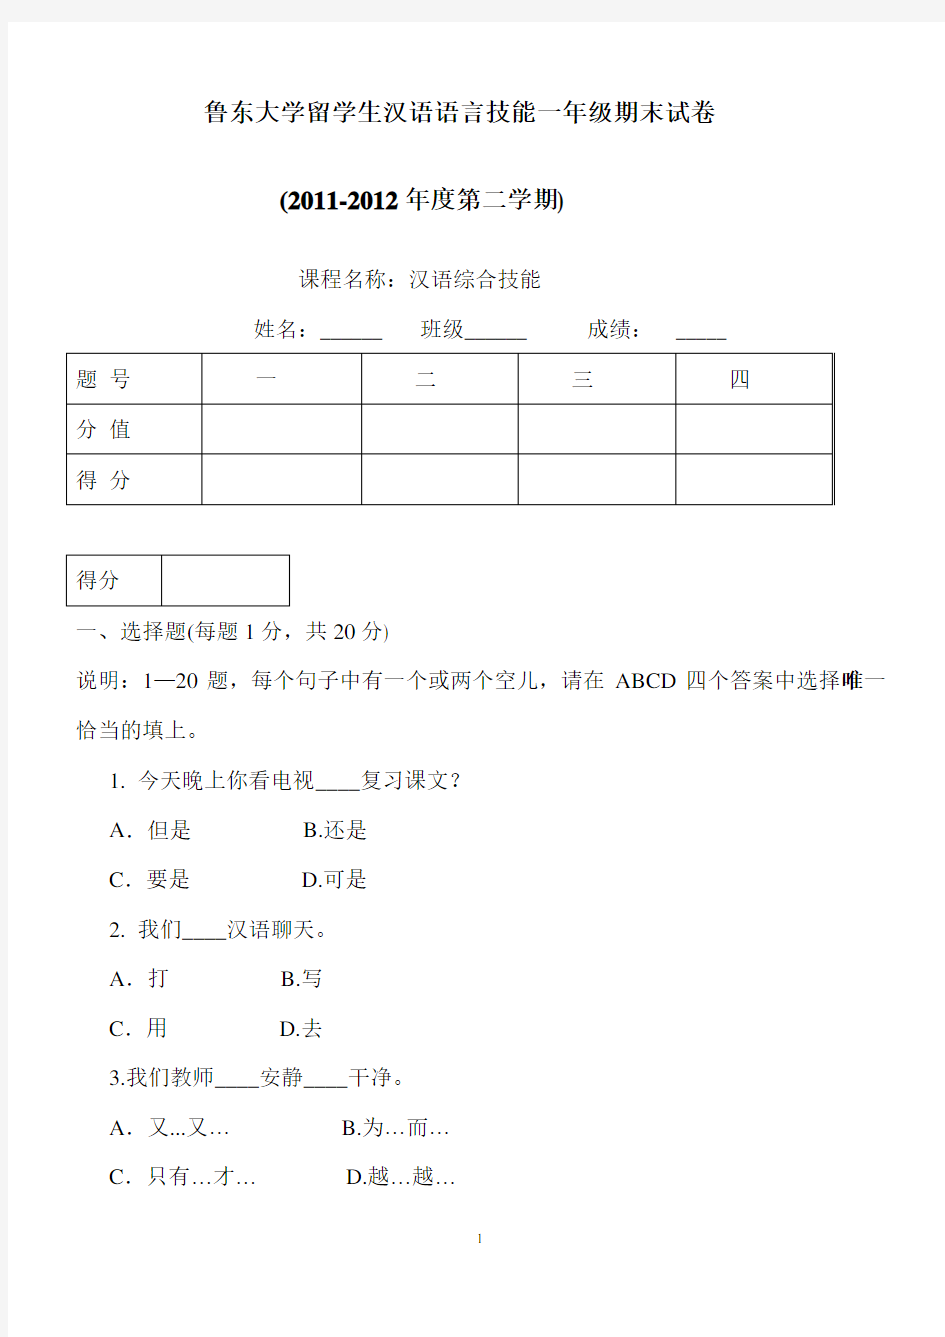 鲁东大学留学生汉语测试期末试题(中级模拟)